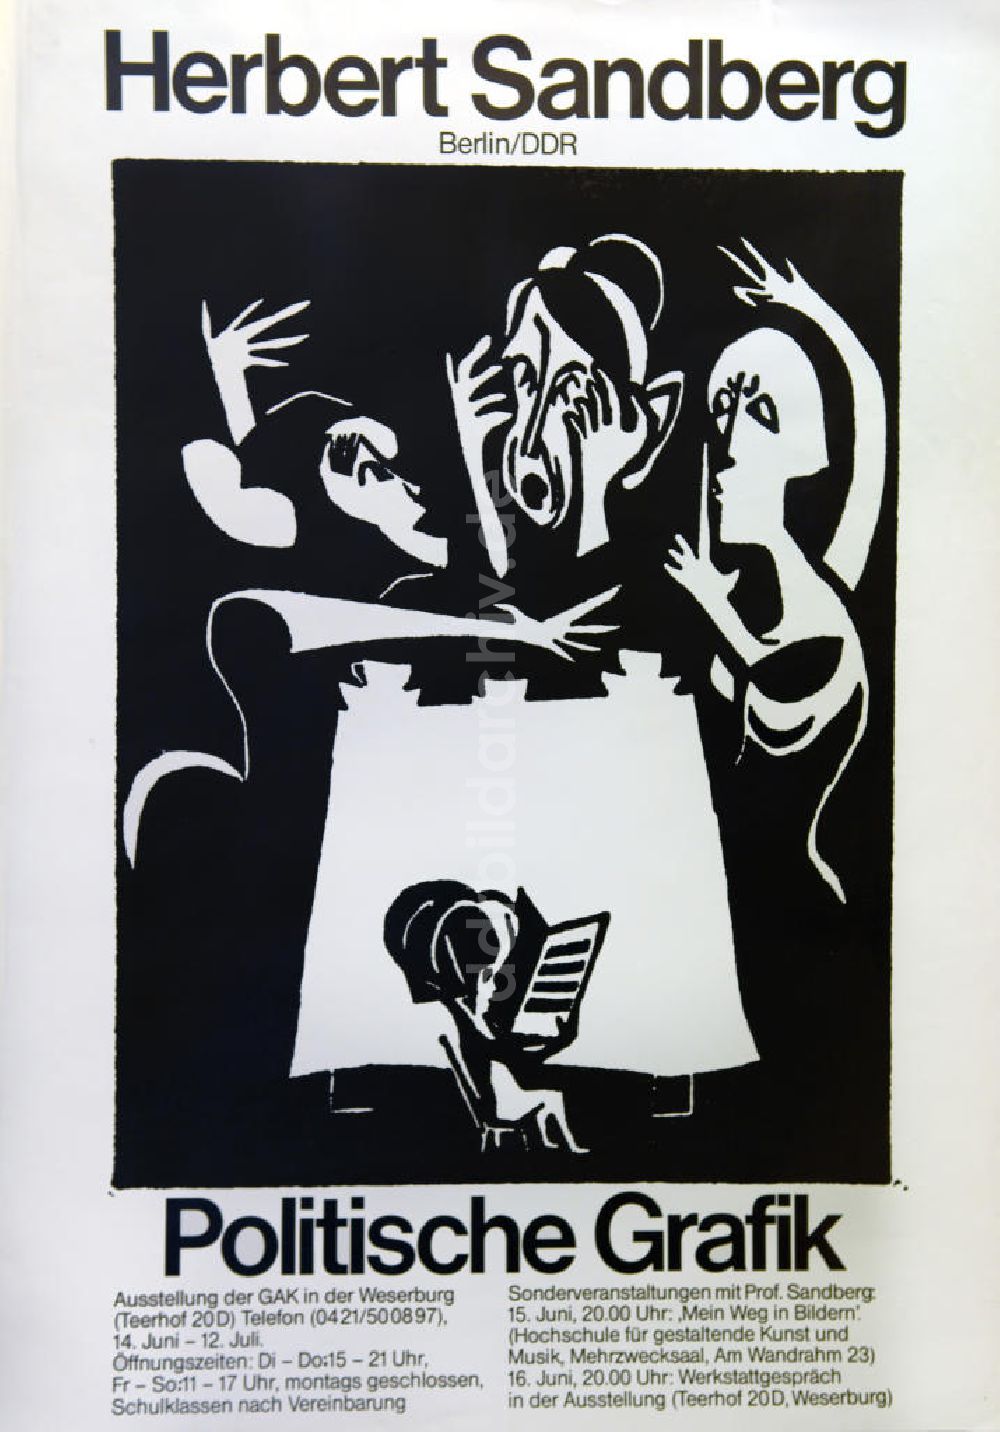 DDR-Fotoarchiv: Berlin - Plakat von der Ausstellung Herbert Sandberg Berlin/DDR, politische Grafik aus dem Jahr 1981